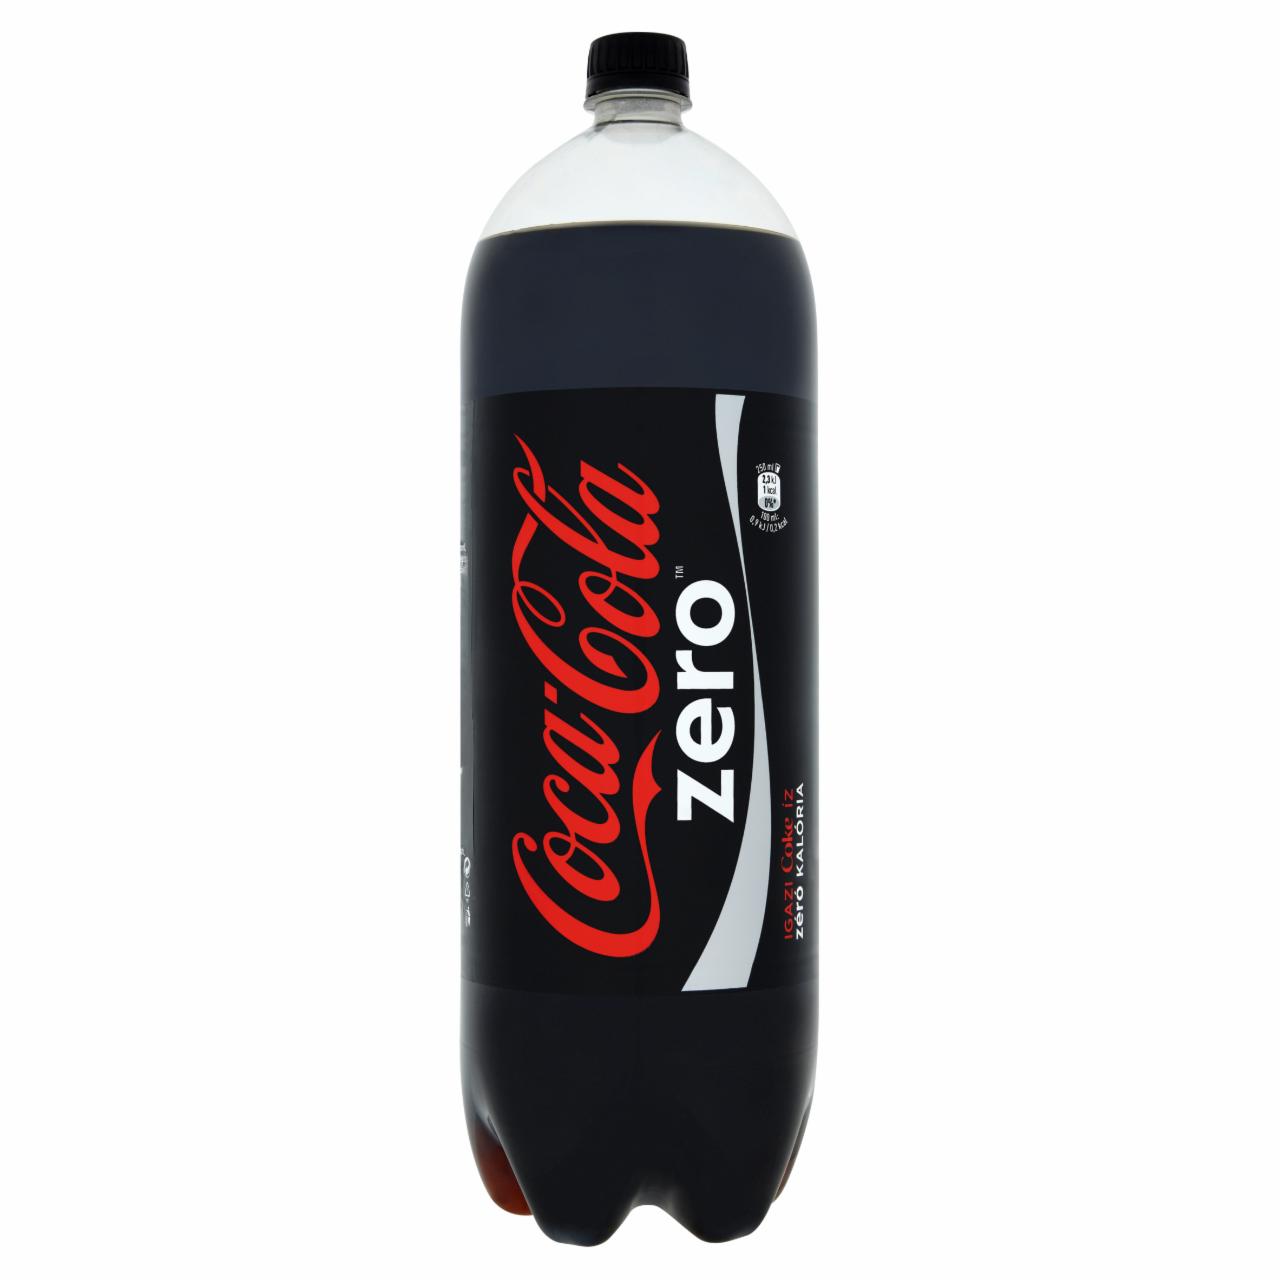 Képek - Coca-Cola Zero colaízű energiamentes szénsavas üdítőital 2,5 l